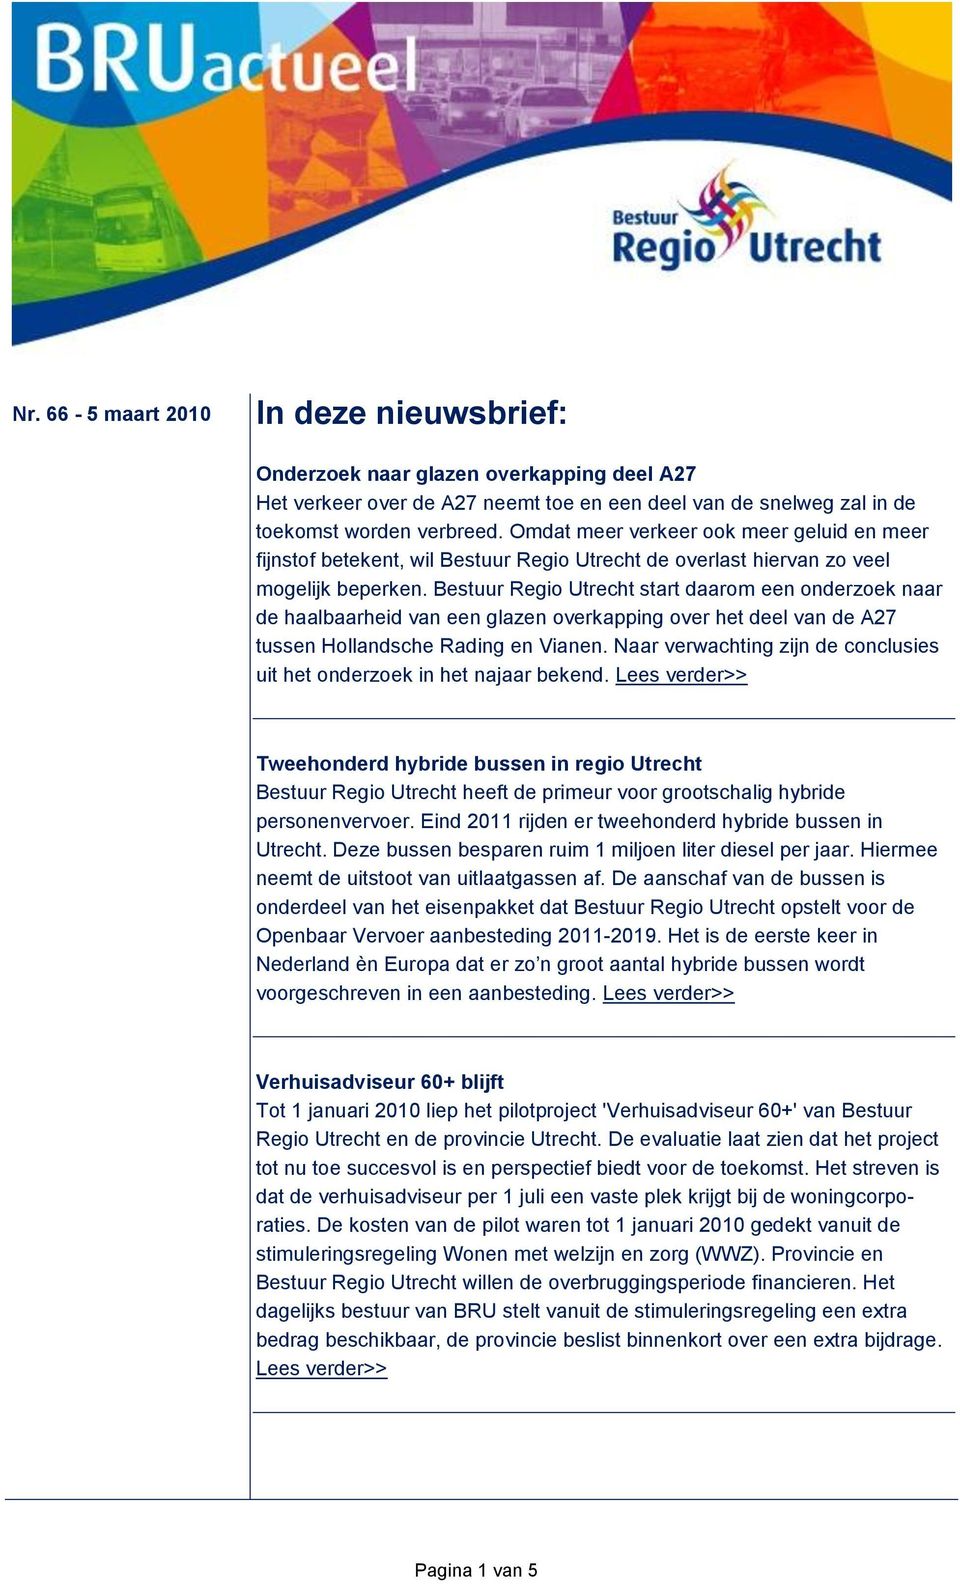 Bestuur Regio Utrecht start daarom een onderzoek naar de haalbaarheid van een glazen overkapping over het deel van de A27 tussen Hollandsche Rading en Vianen.